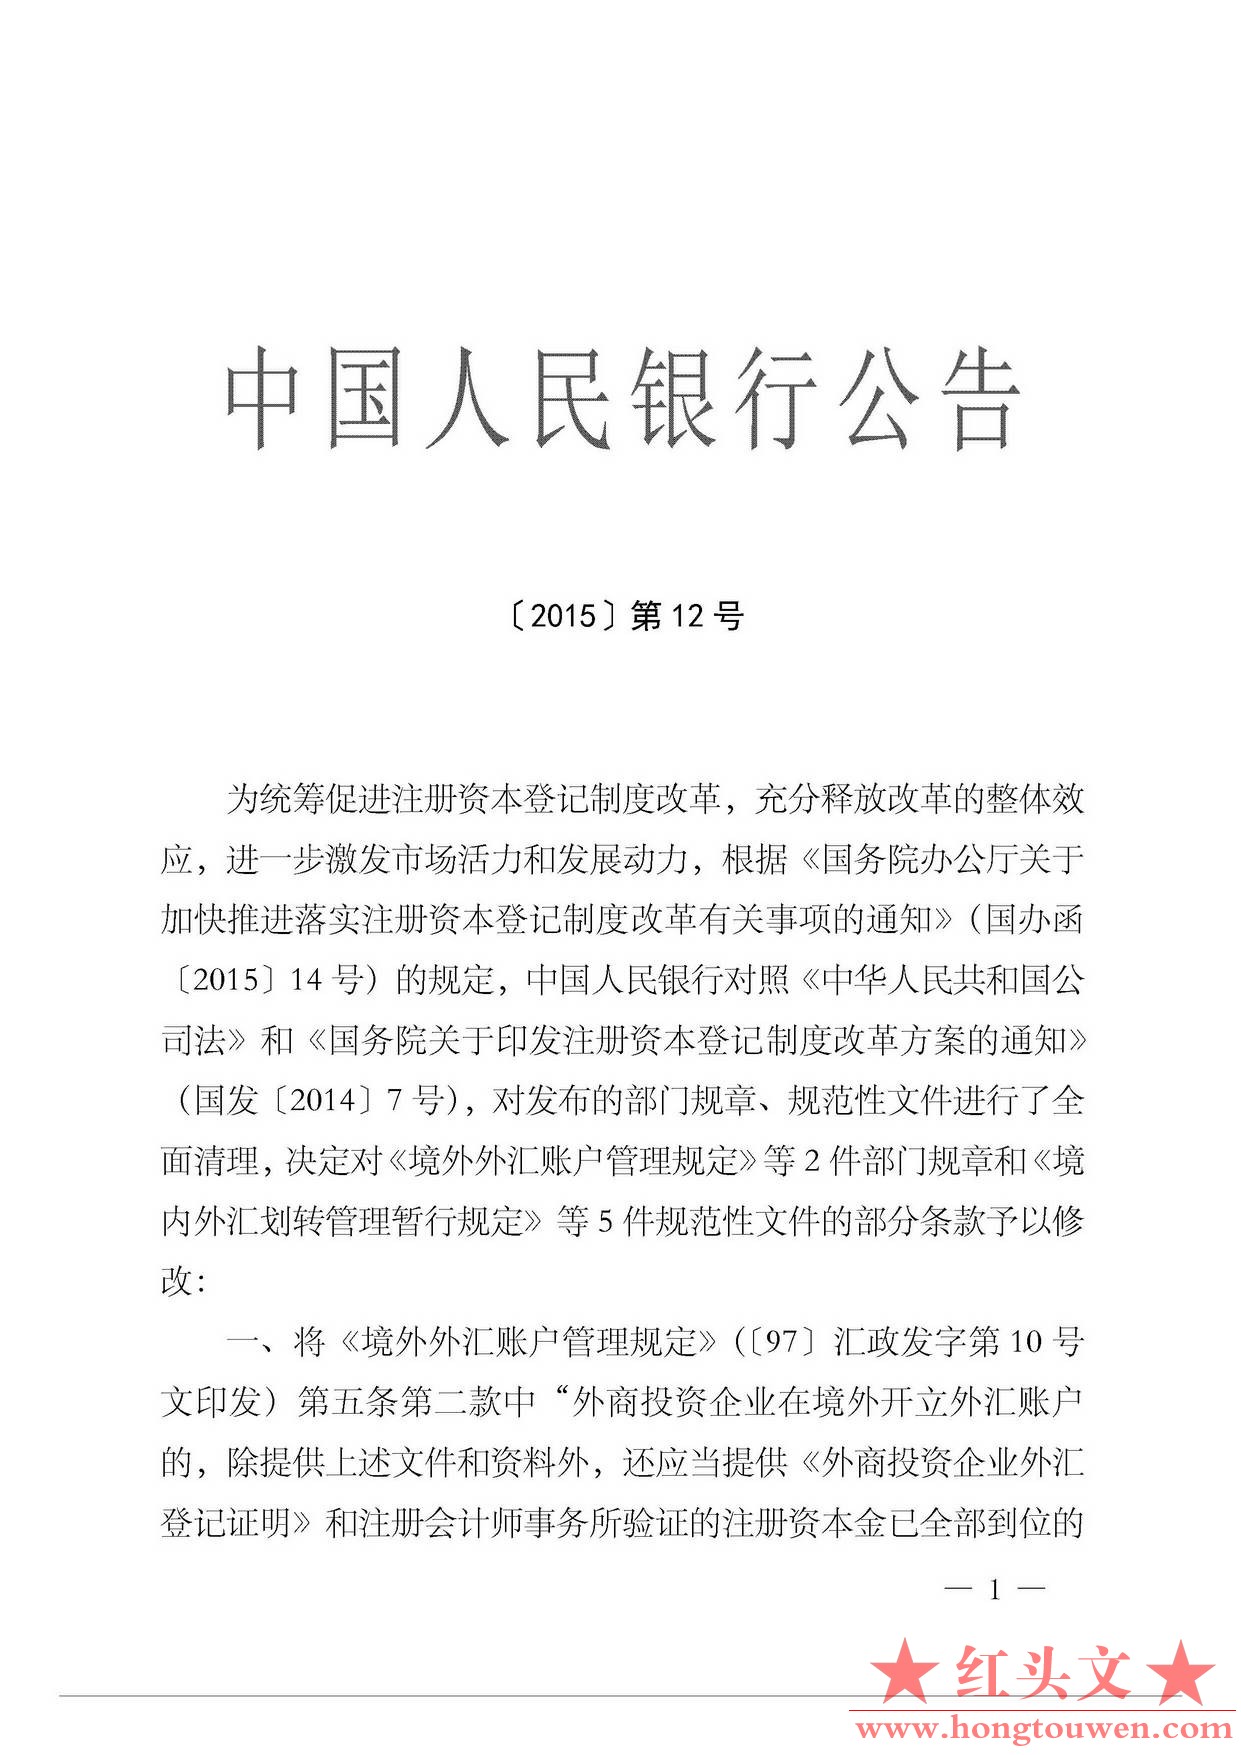 中国人民银行公告[2015]12号-发布规章和规范性文件清理结果_页面_1.jpg.jpg